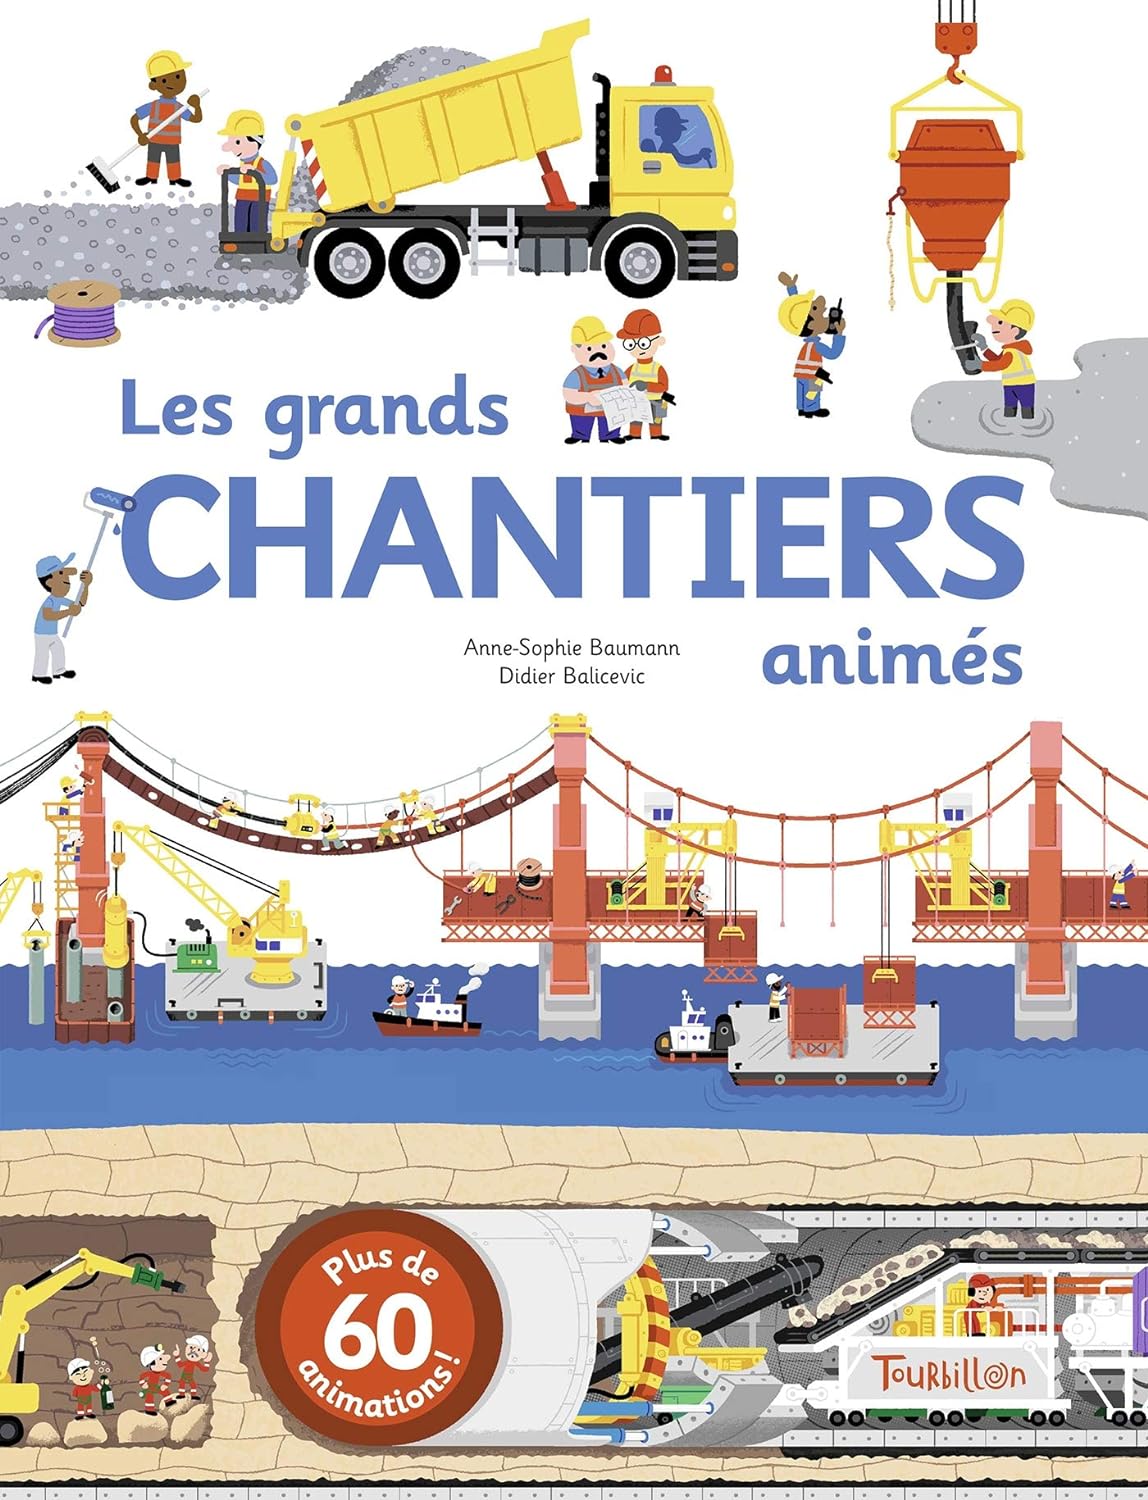 Livre ISBN 2848017953 Les grands chantiers anumés (Baumann, Anne-Sophie)